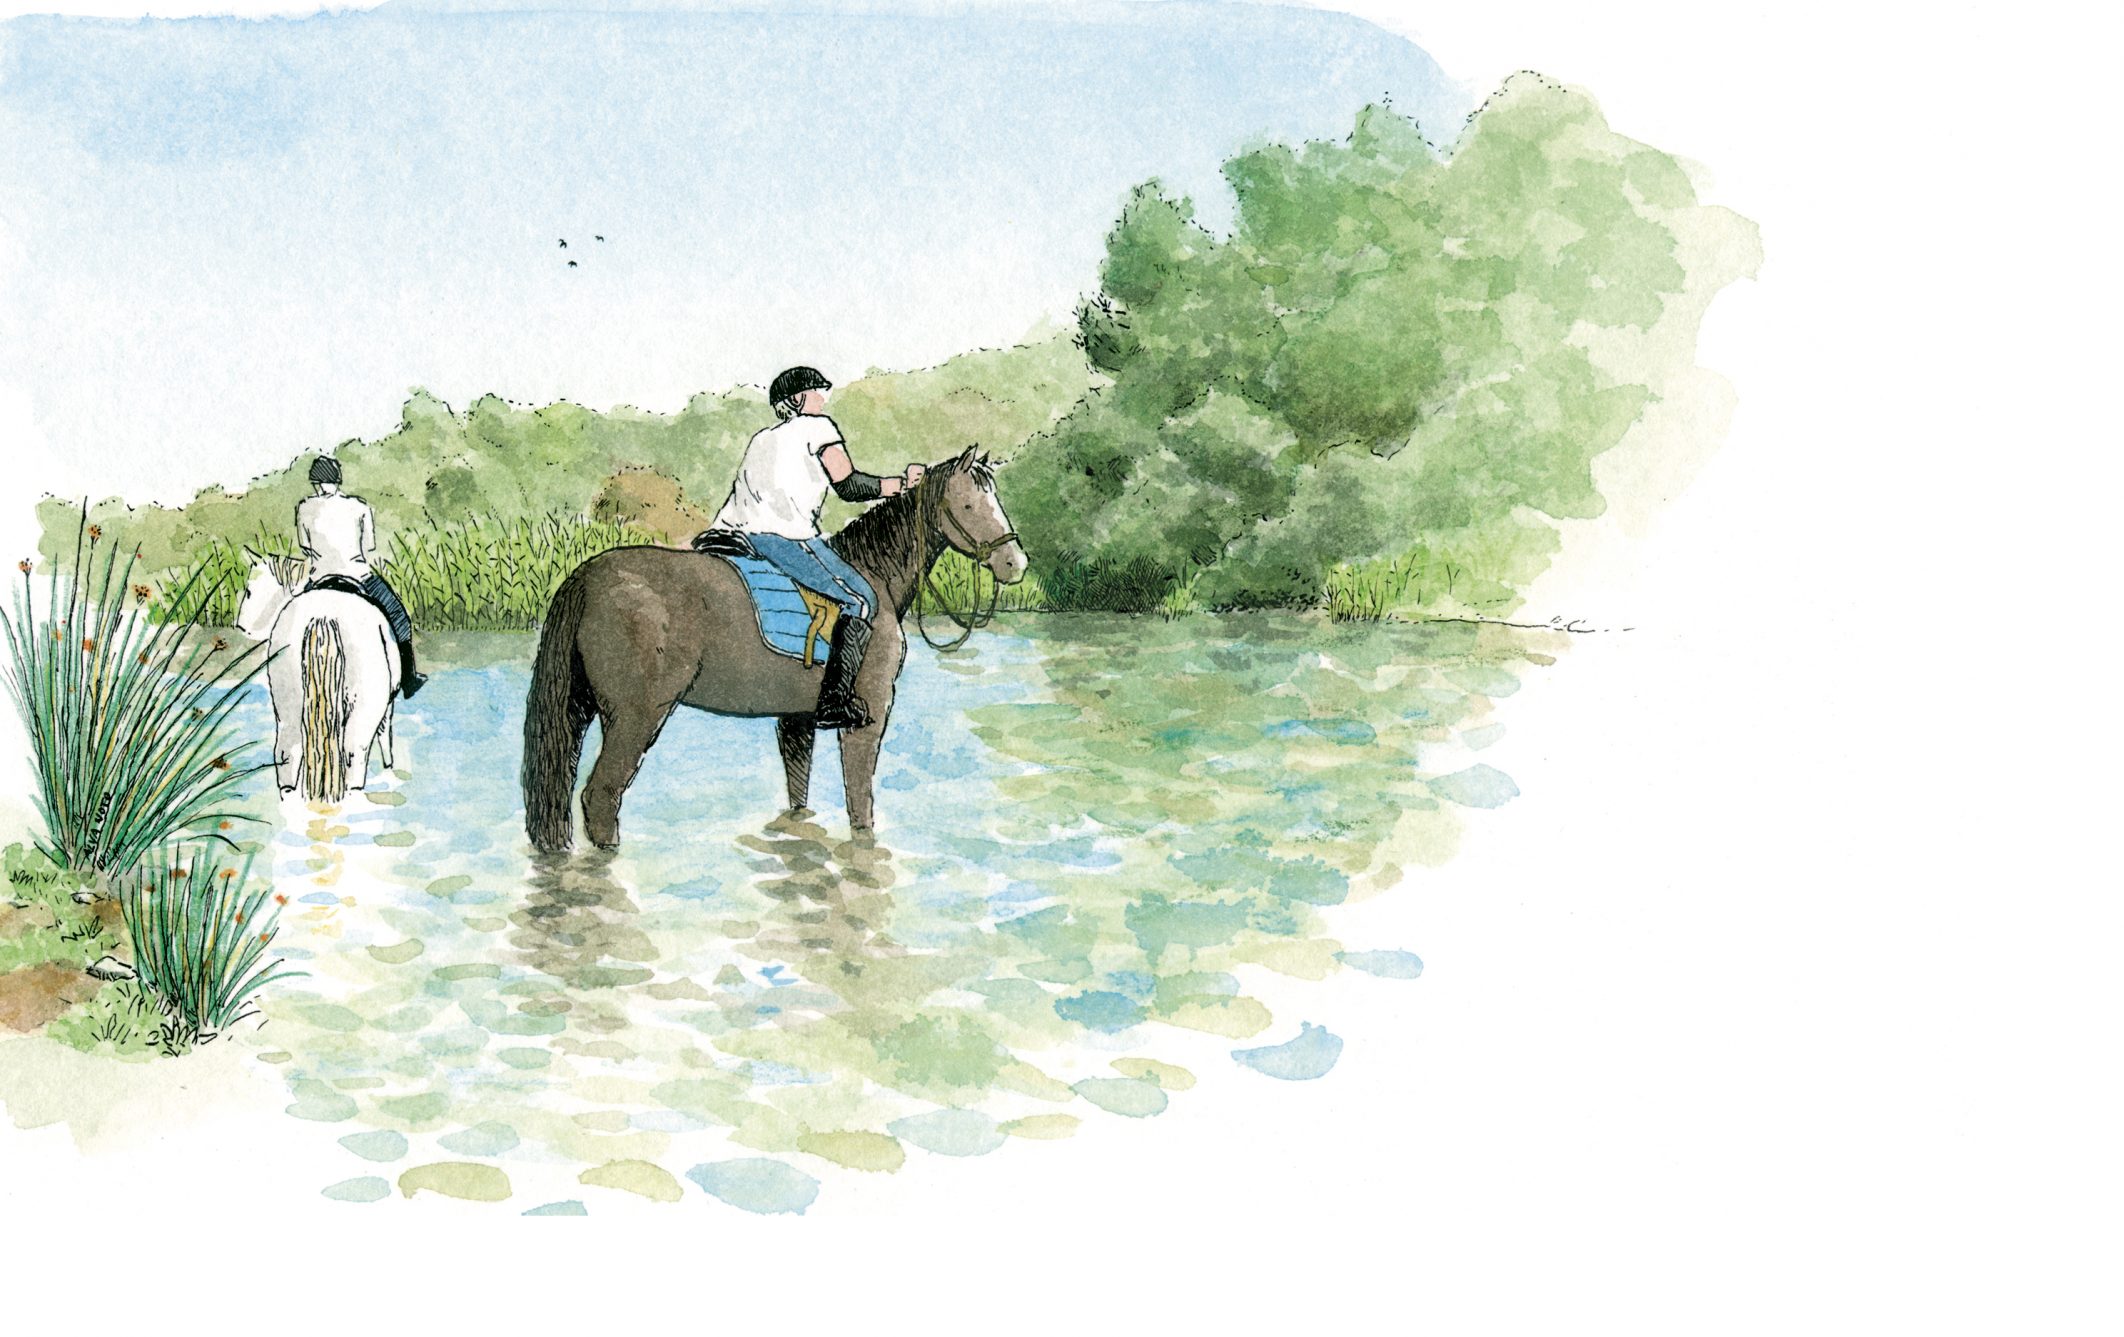 Dibujo de dos caballos en el rio bullent en el parque natural de la marjal pego oliva. Valencia